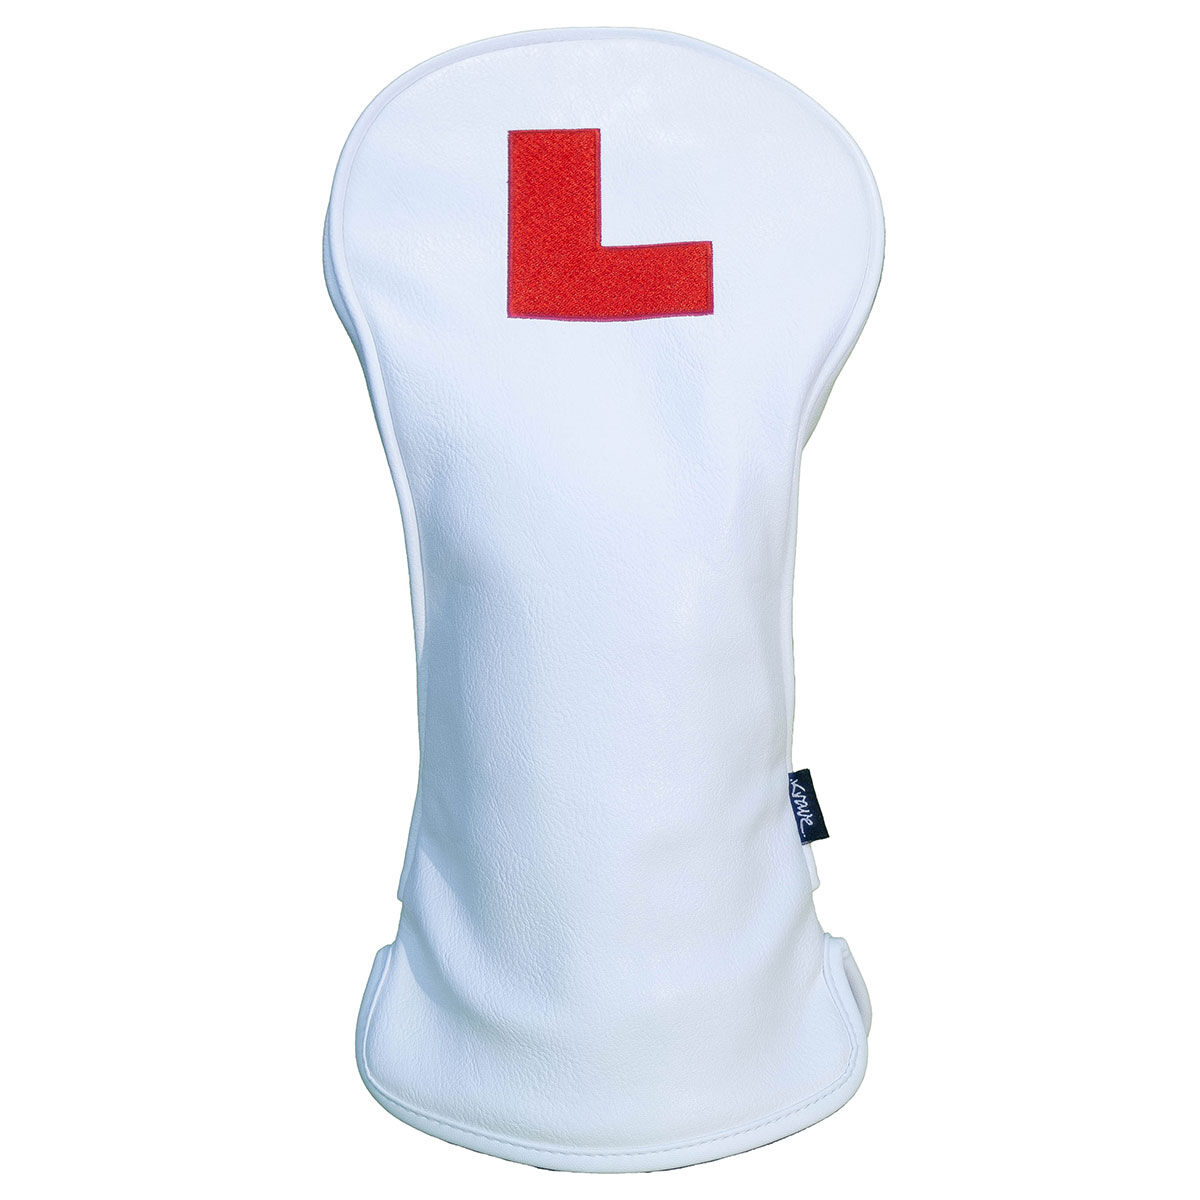 Krave Learner Golf Hybrid Head Cover, Mens, Hybrid, White/red | American Golf